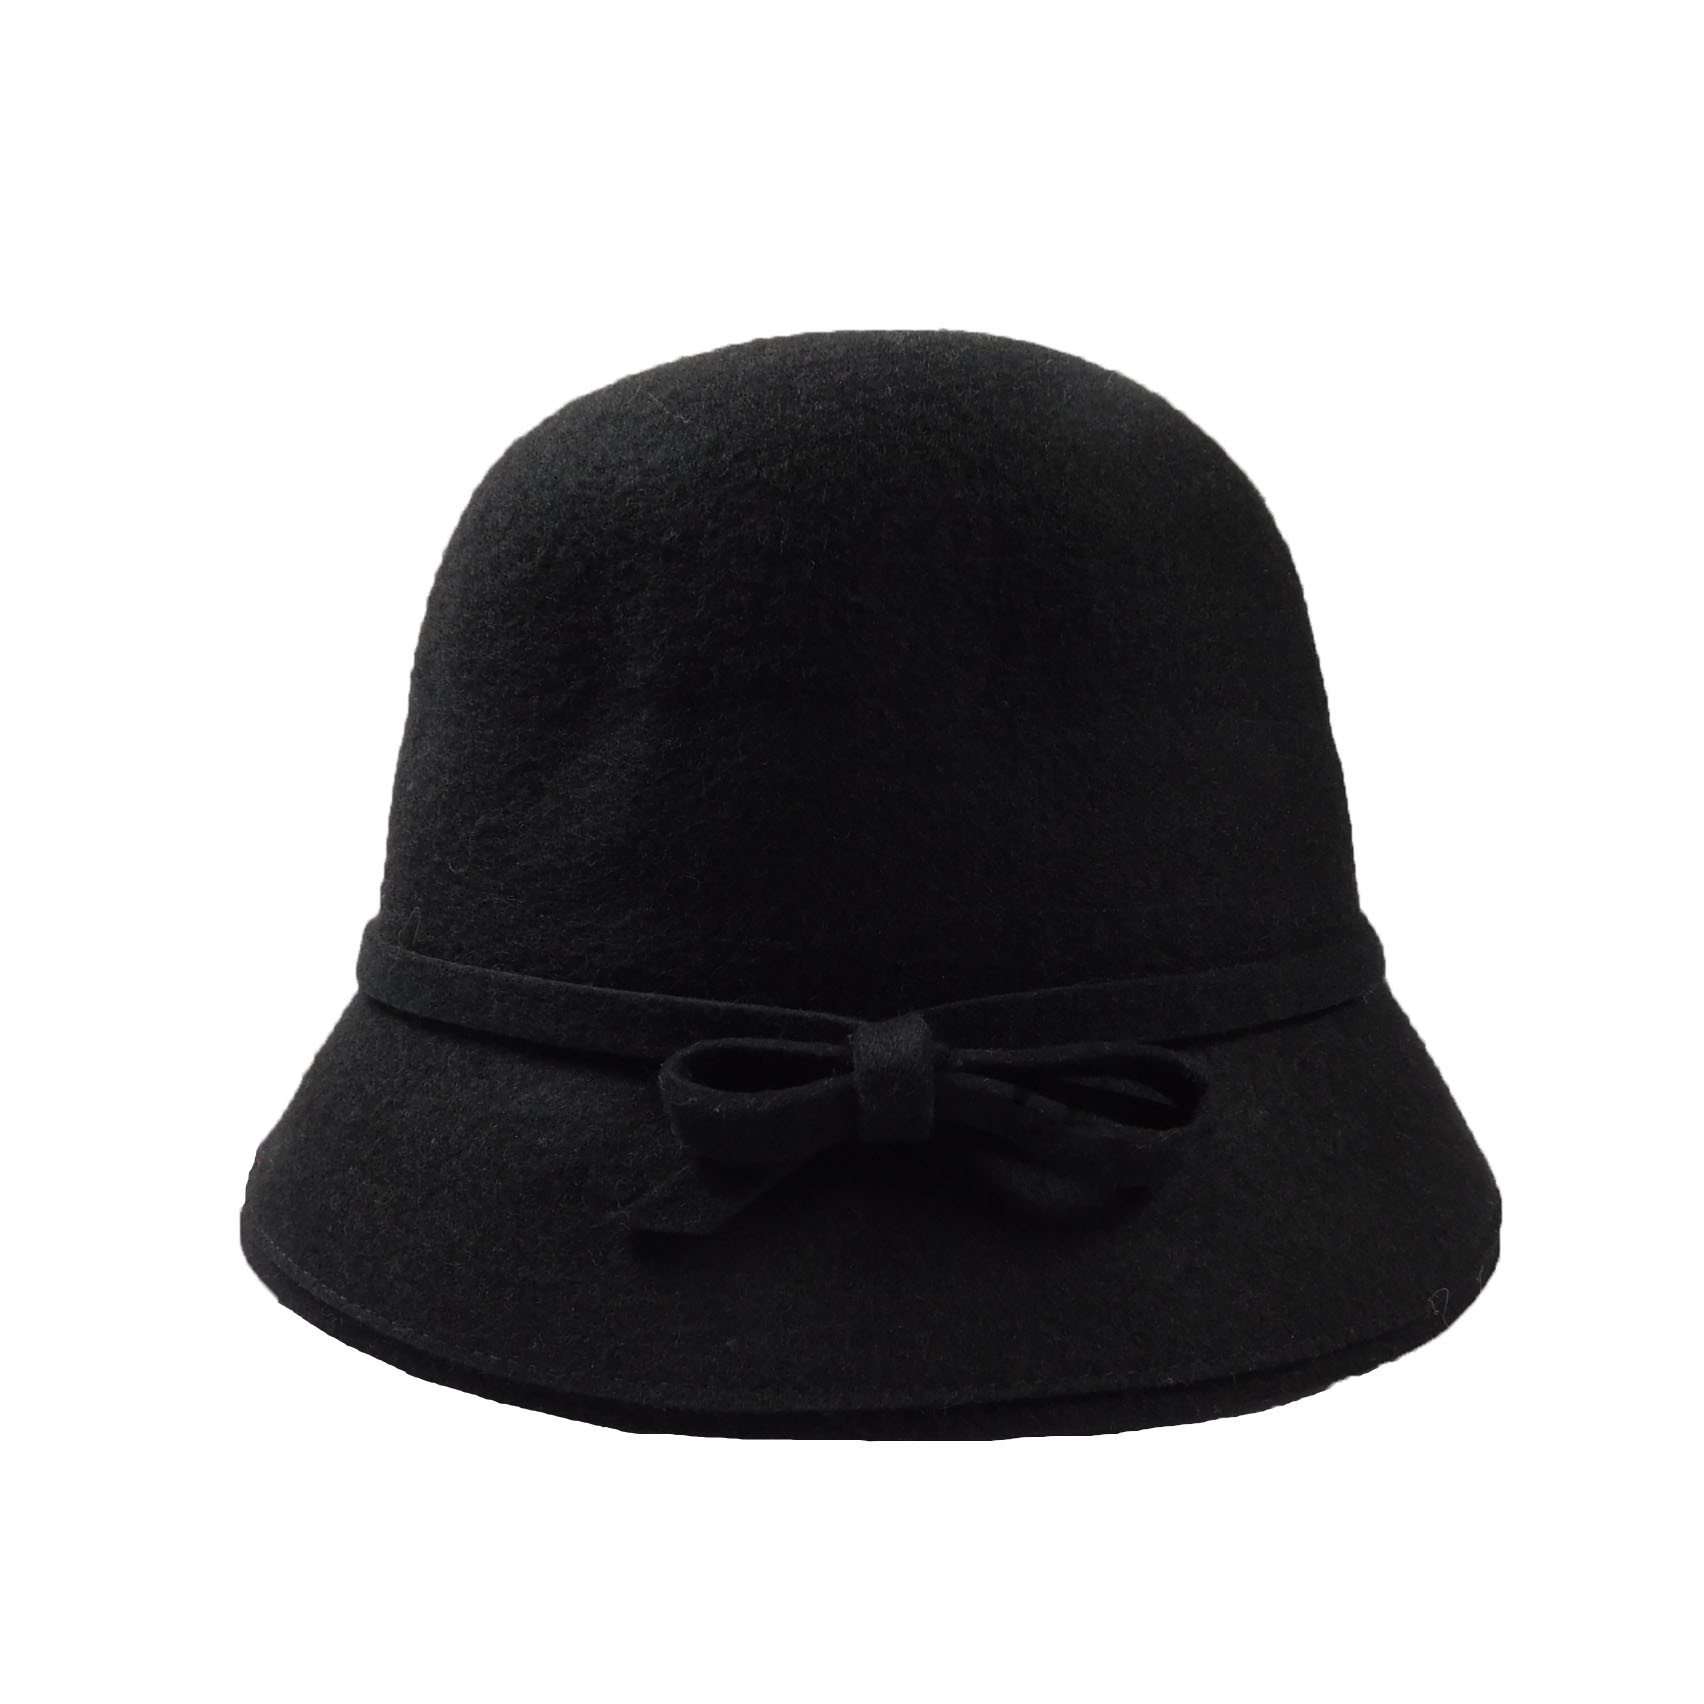 Wool Felt Cloche/Bucket Hat Cloche Jeanne Simmons WWWF182BK Black  